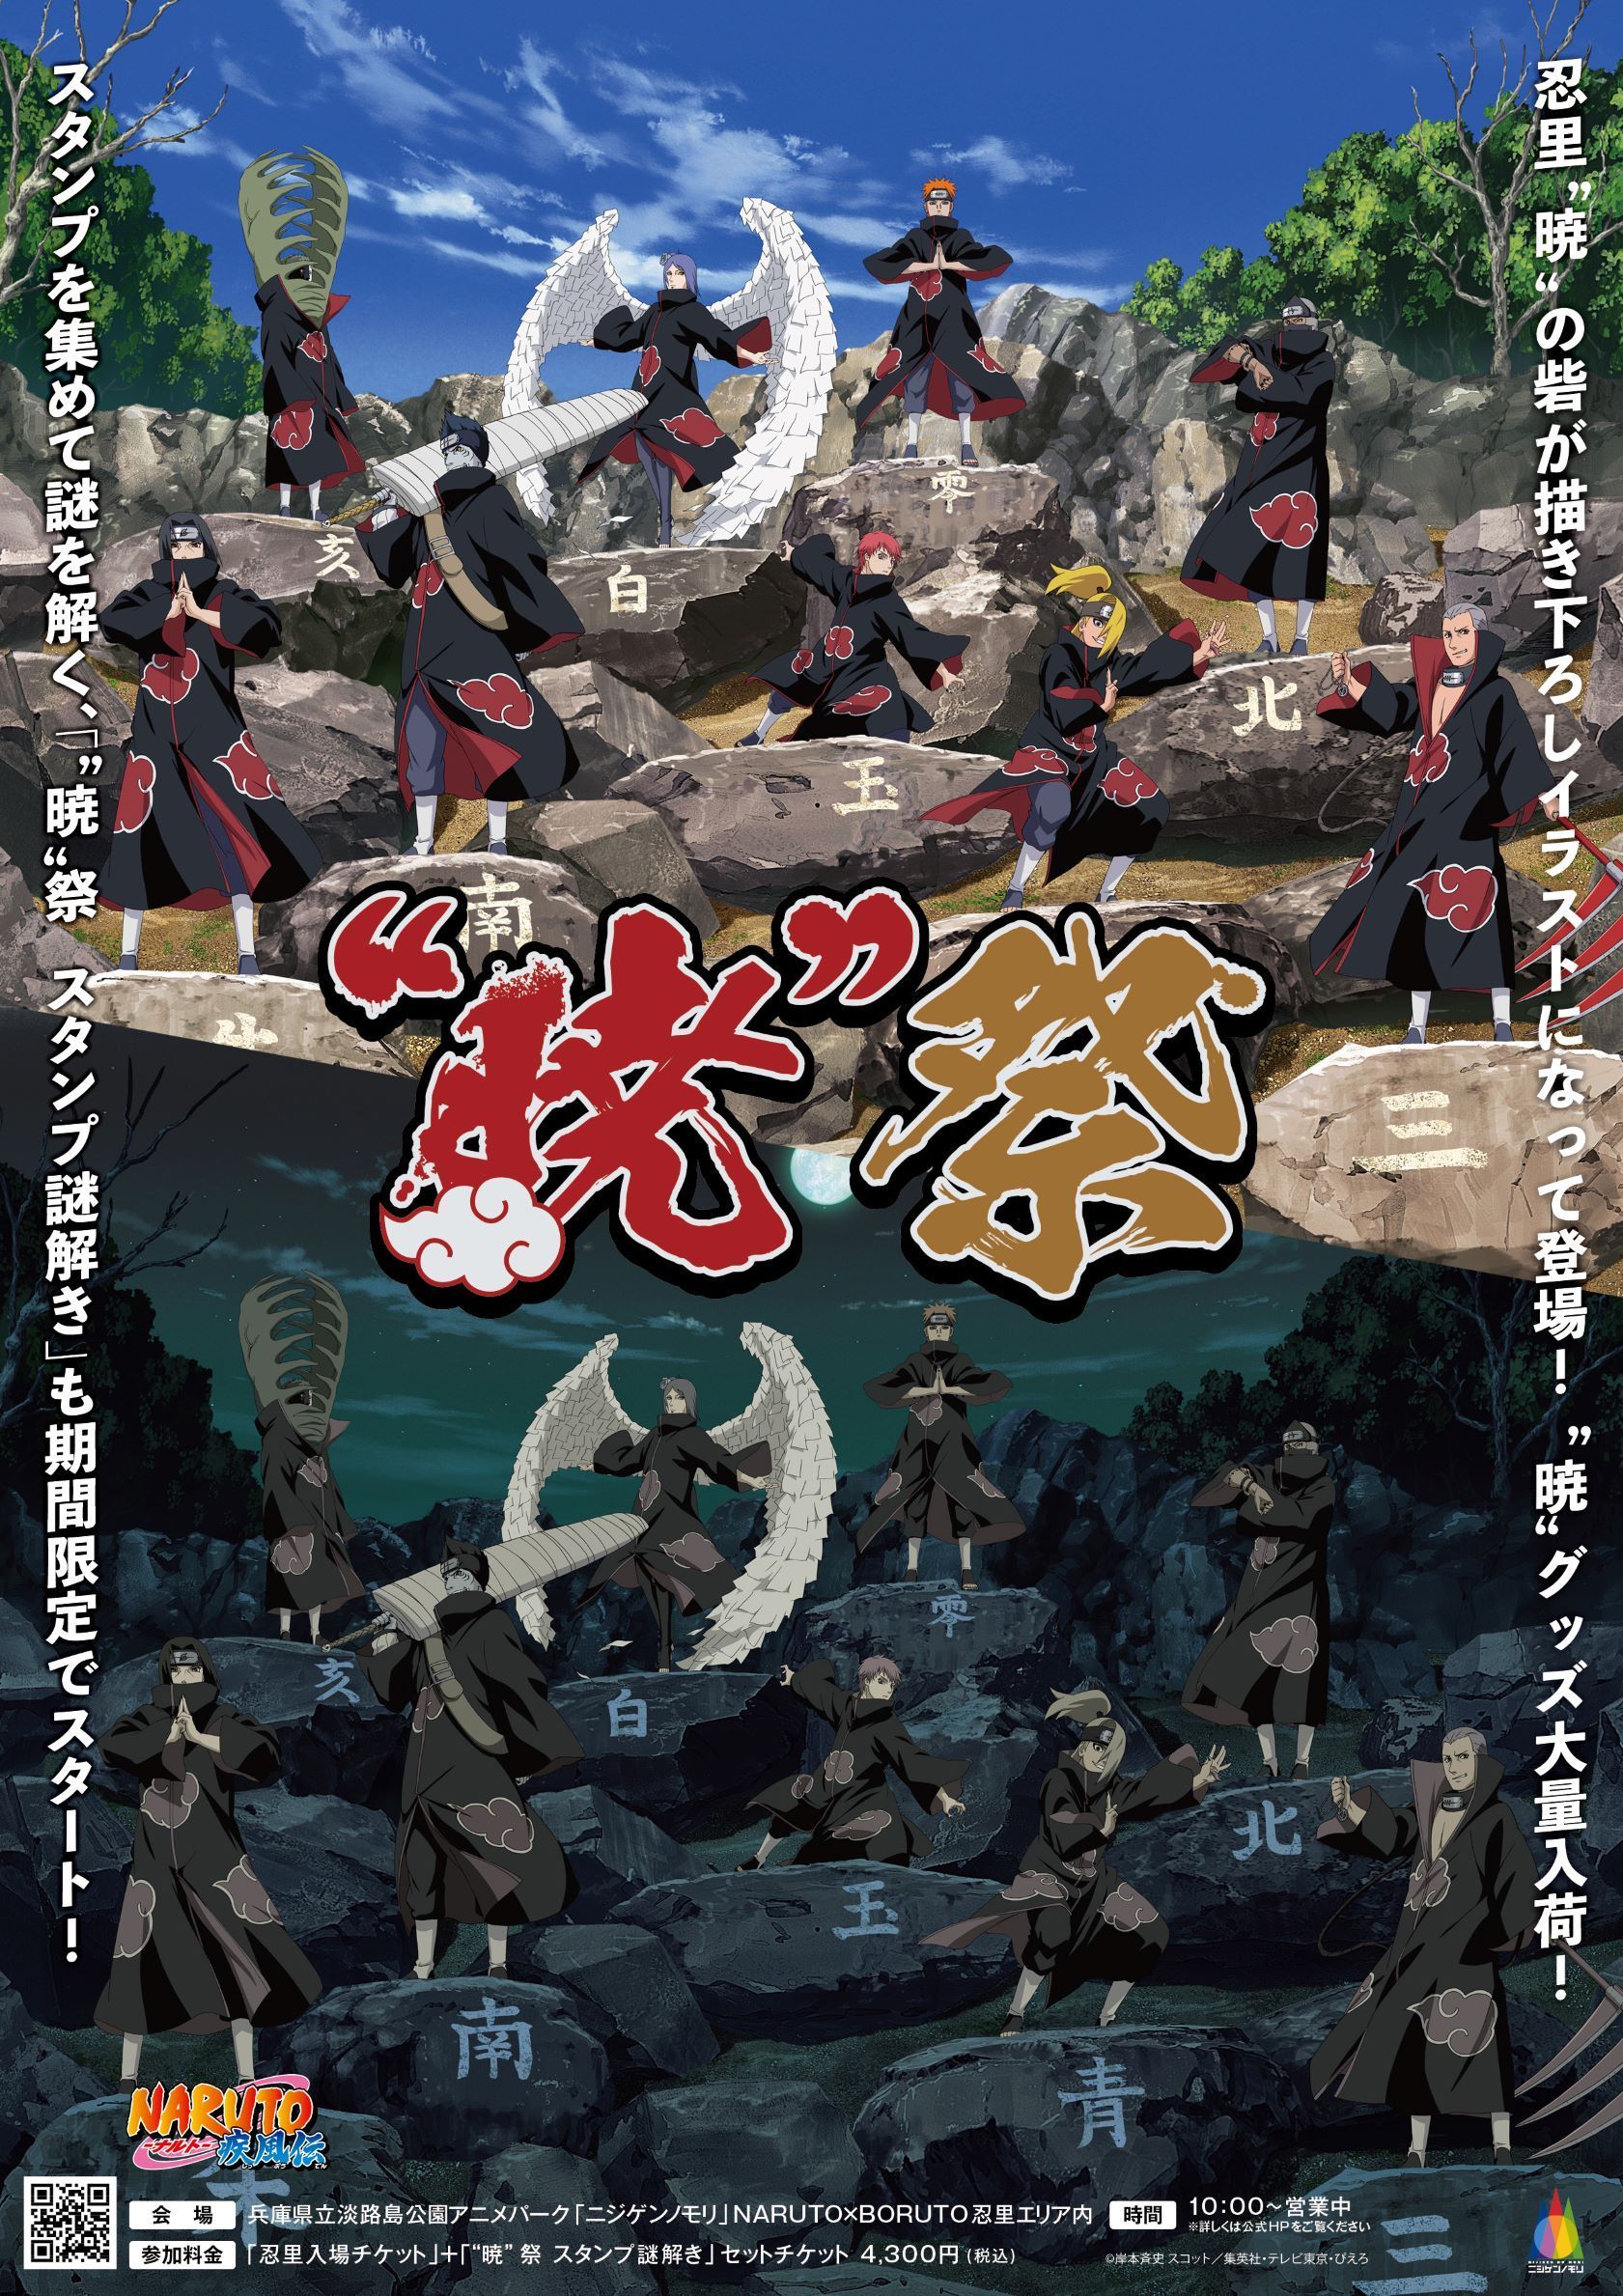 Akatsuki - 5 curiosidades sobre a Akatsuki de Naruto Shippuden que